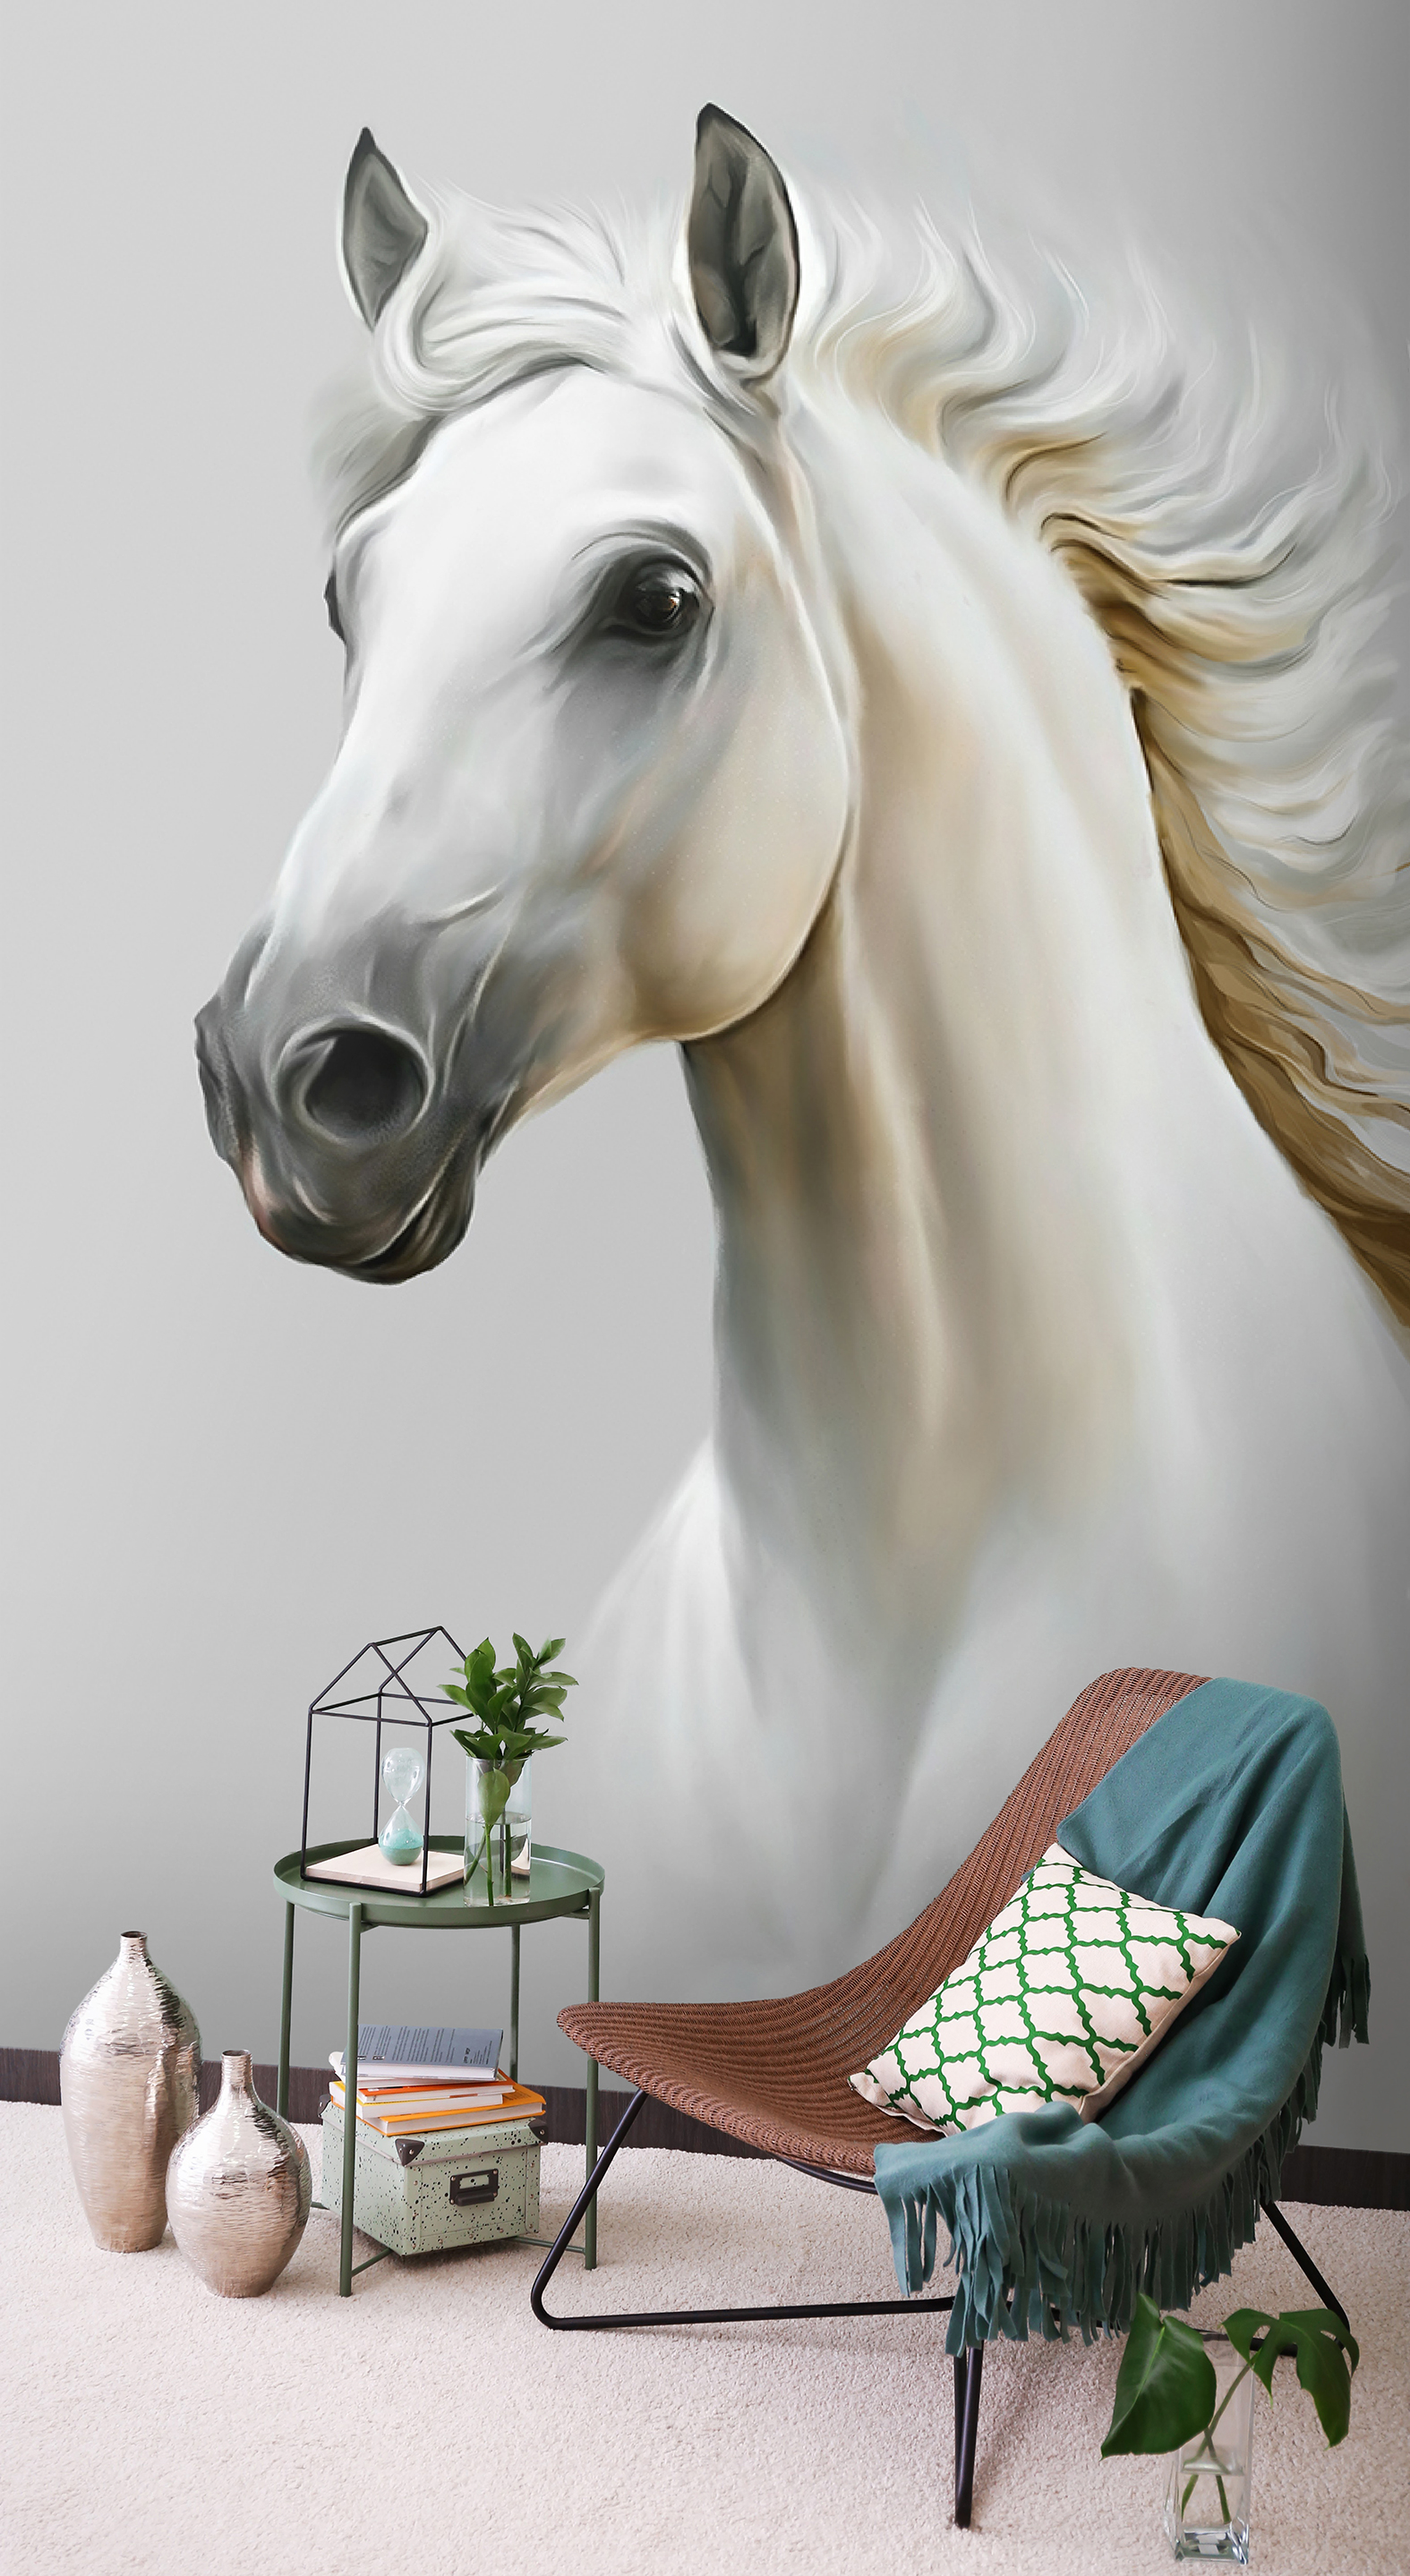 магнит лошадь набор из 4 штук xa 389 113 105592 Фотообои Photostena Белая лошадь 2 x 3 м